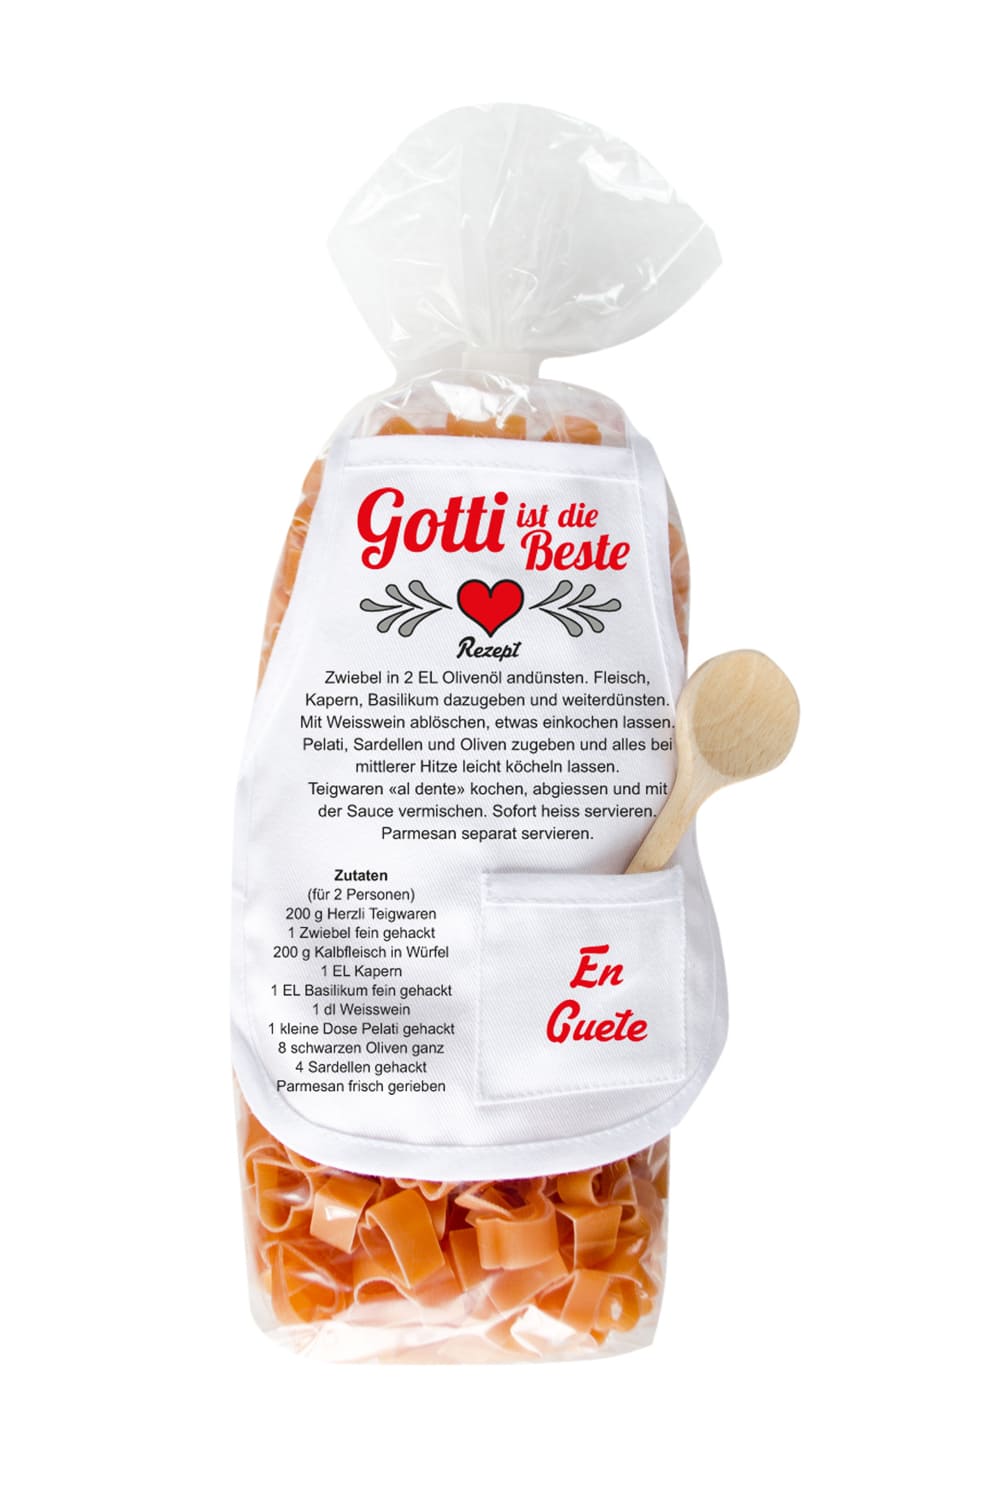 Die Gotti Pasta sind in einer Herz Form und in einer schoenen Verpackung mit einer Mini Kochschuerze. Ausserdem steht auf der laessigen Kochschuerze ein feines Rezept zum Nachkochen und der Spruch: Gotti ist die Beste. Ein tolles Geschenk fuer die liebe Patin zum Geburtstag, zu Weihnachten oder zum Valentinstag.